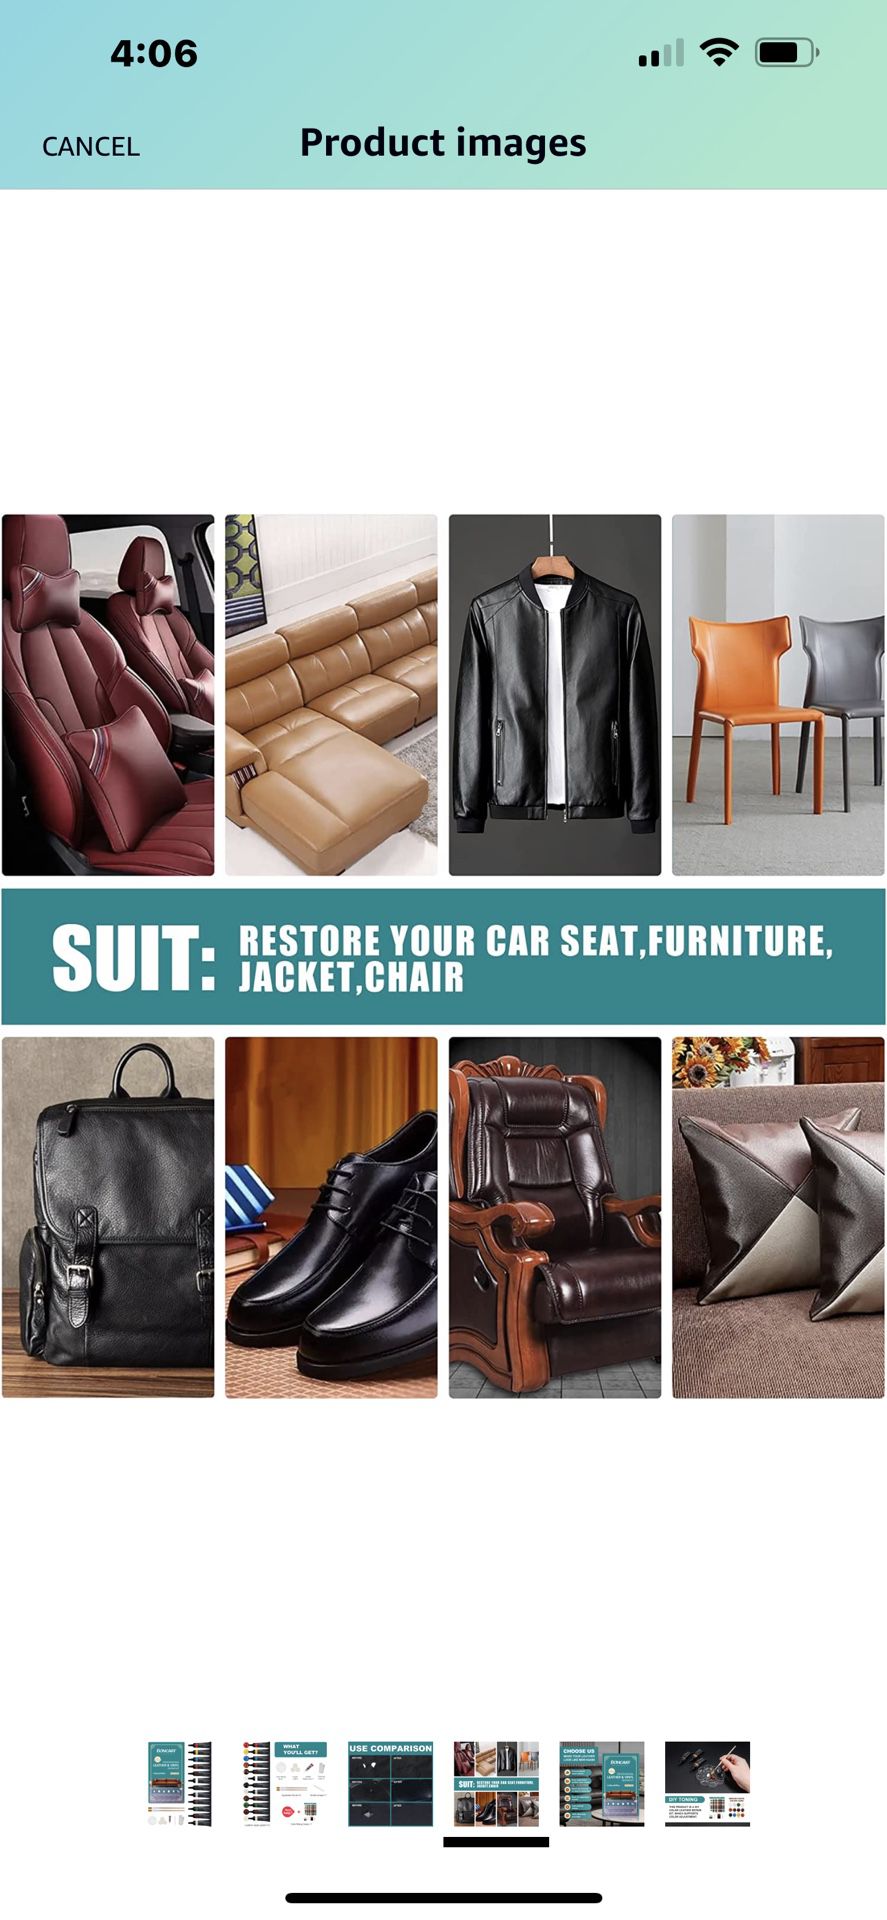 Boncart Professional Leather & Vinyl Repair Kit 12 Colors - Sofa,Clothing,Bags